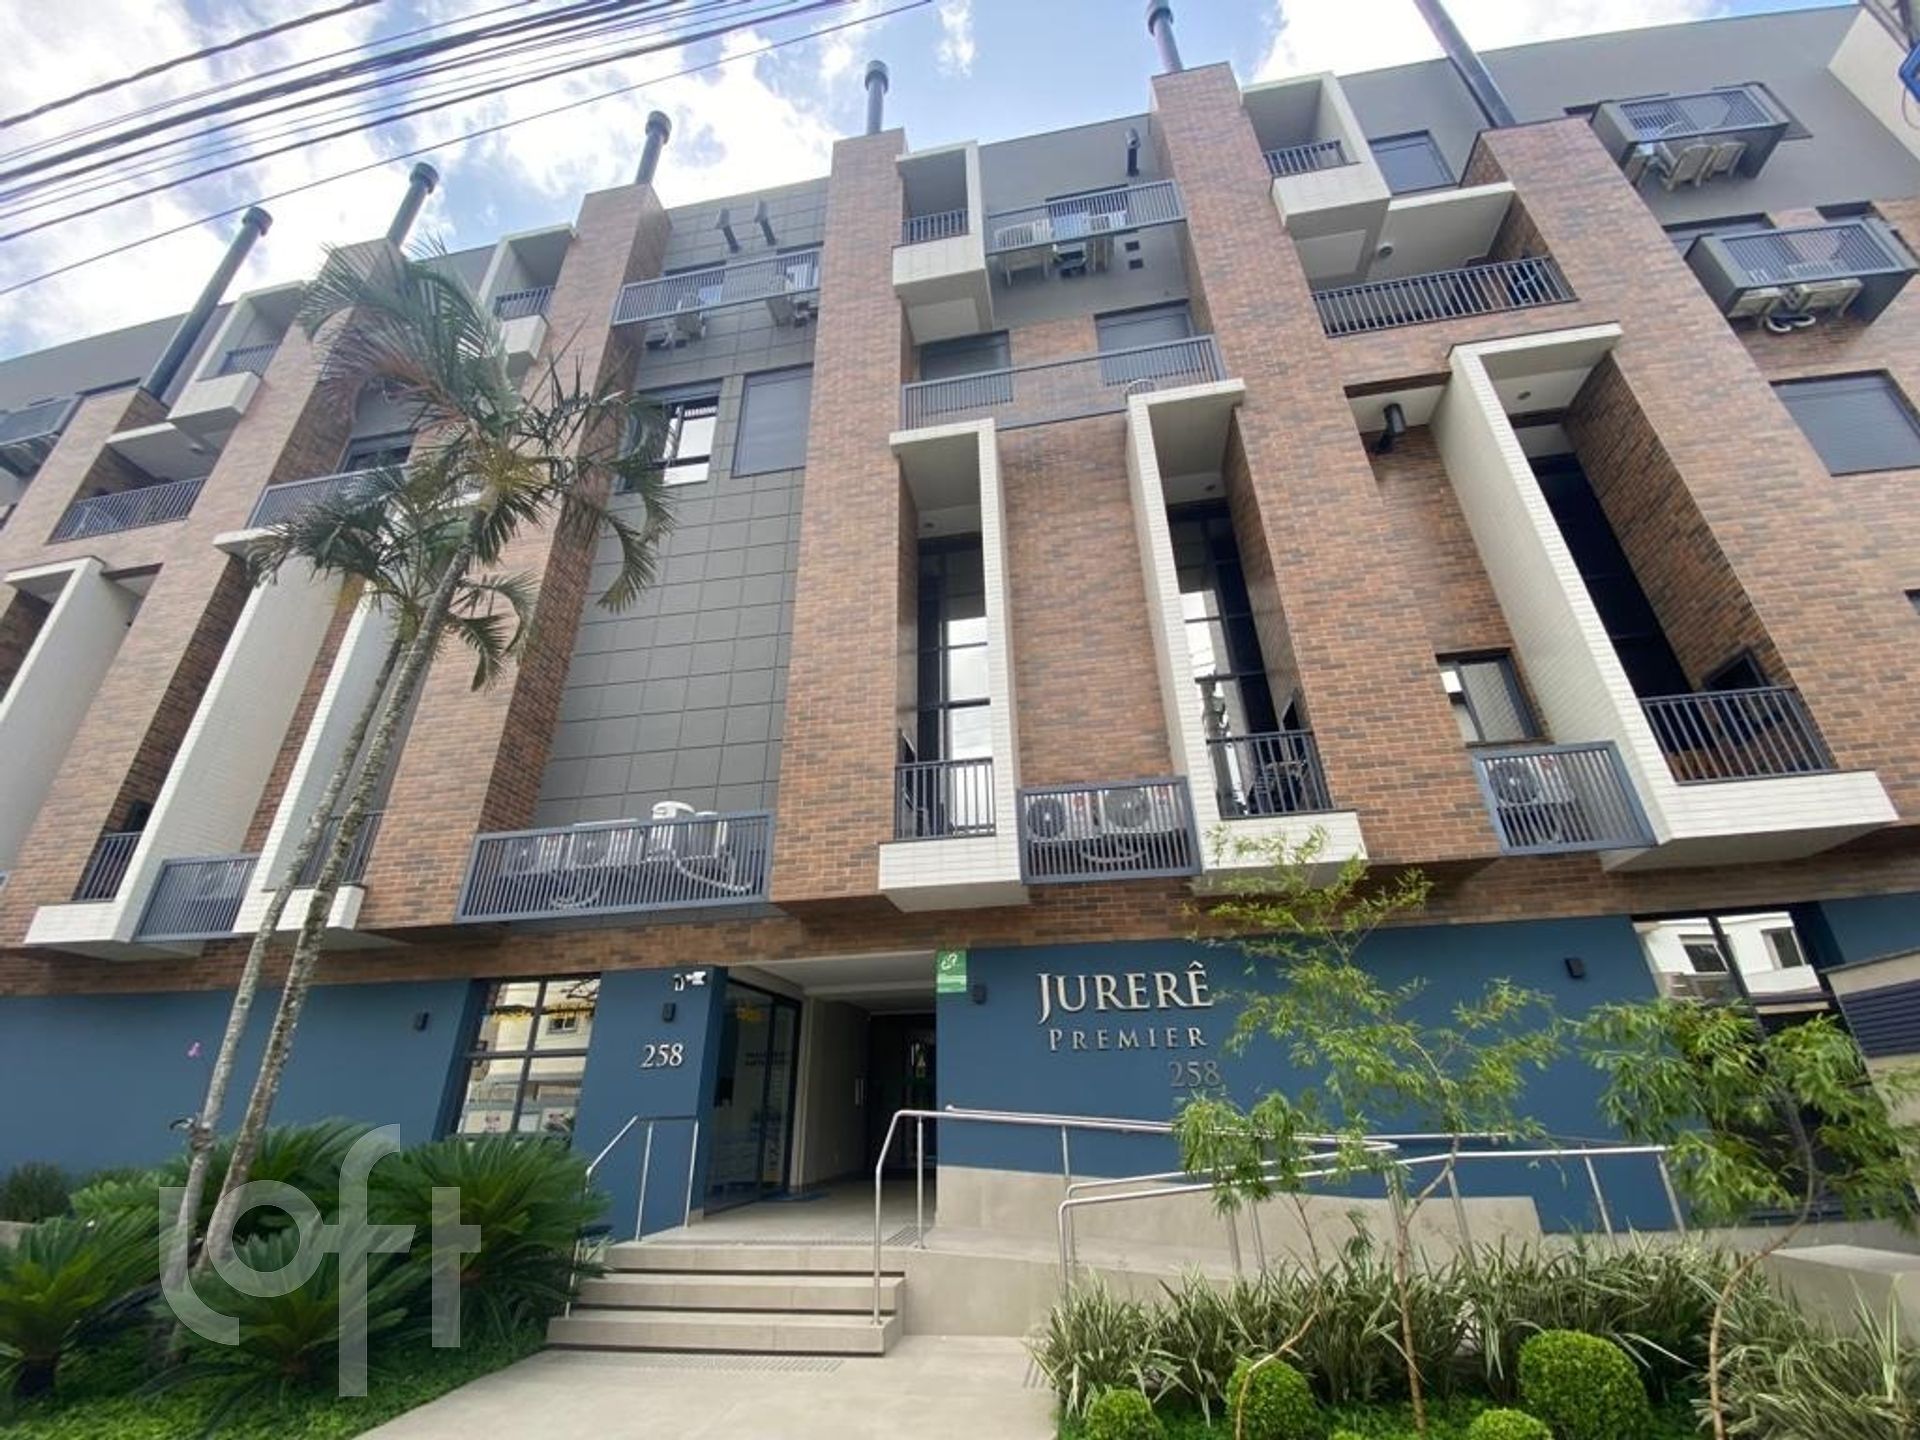 VENDA &#8211; Apartamento de 2 quartos no bairro Jurere Leste, Florianópolis &#8211; PUefv3a